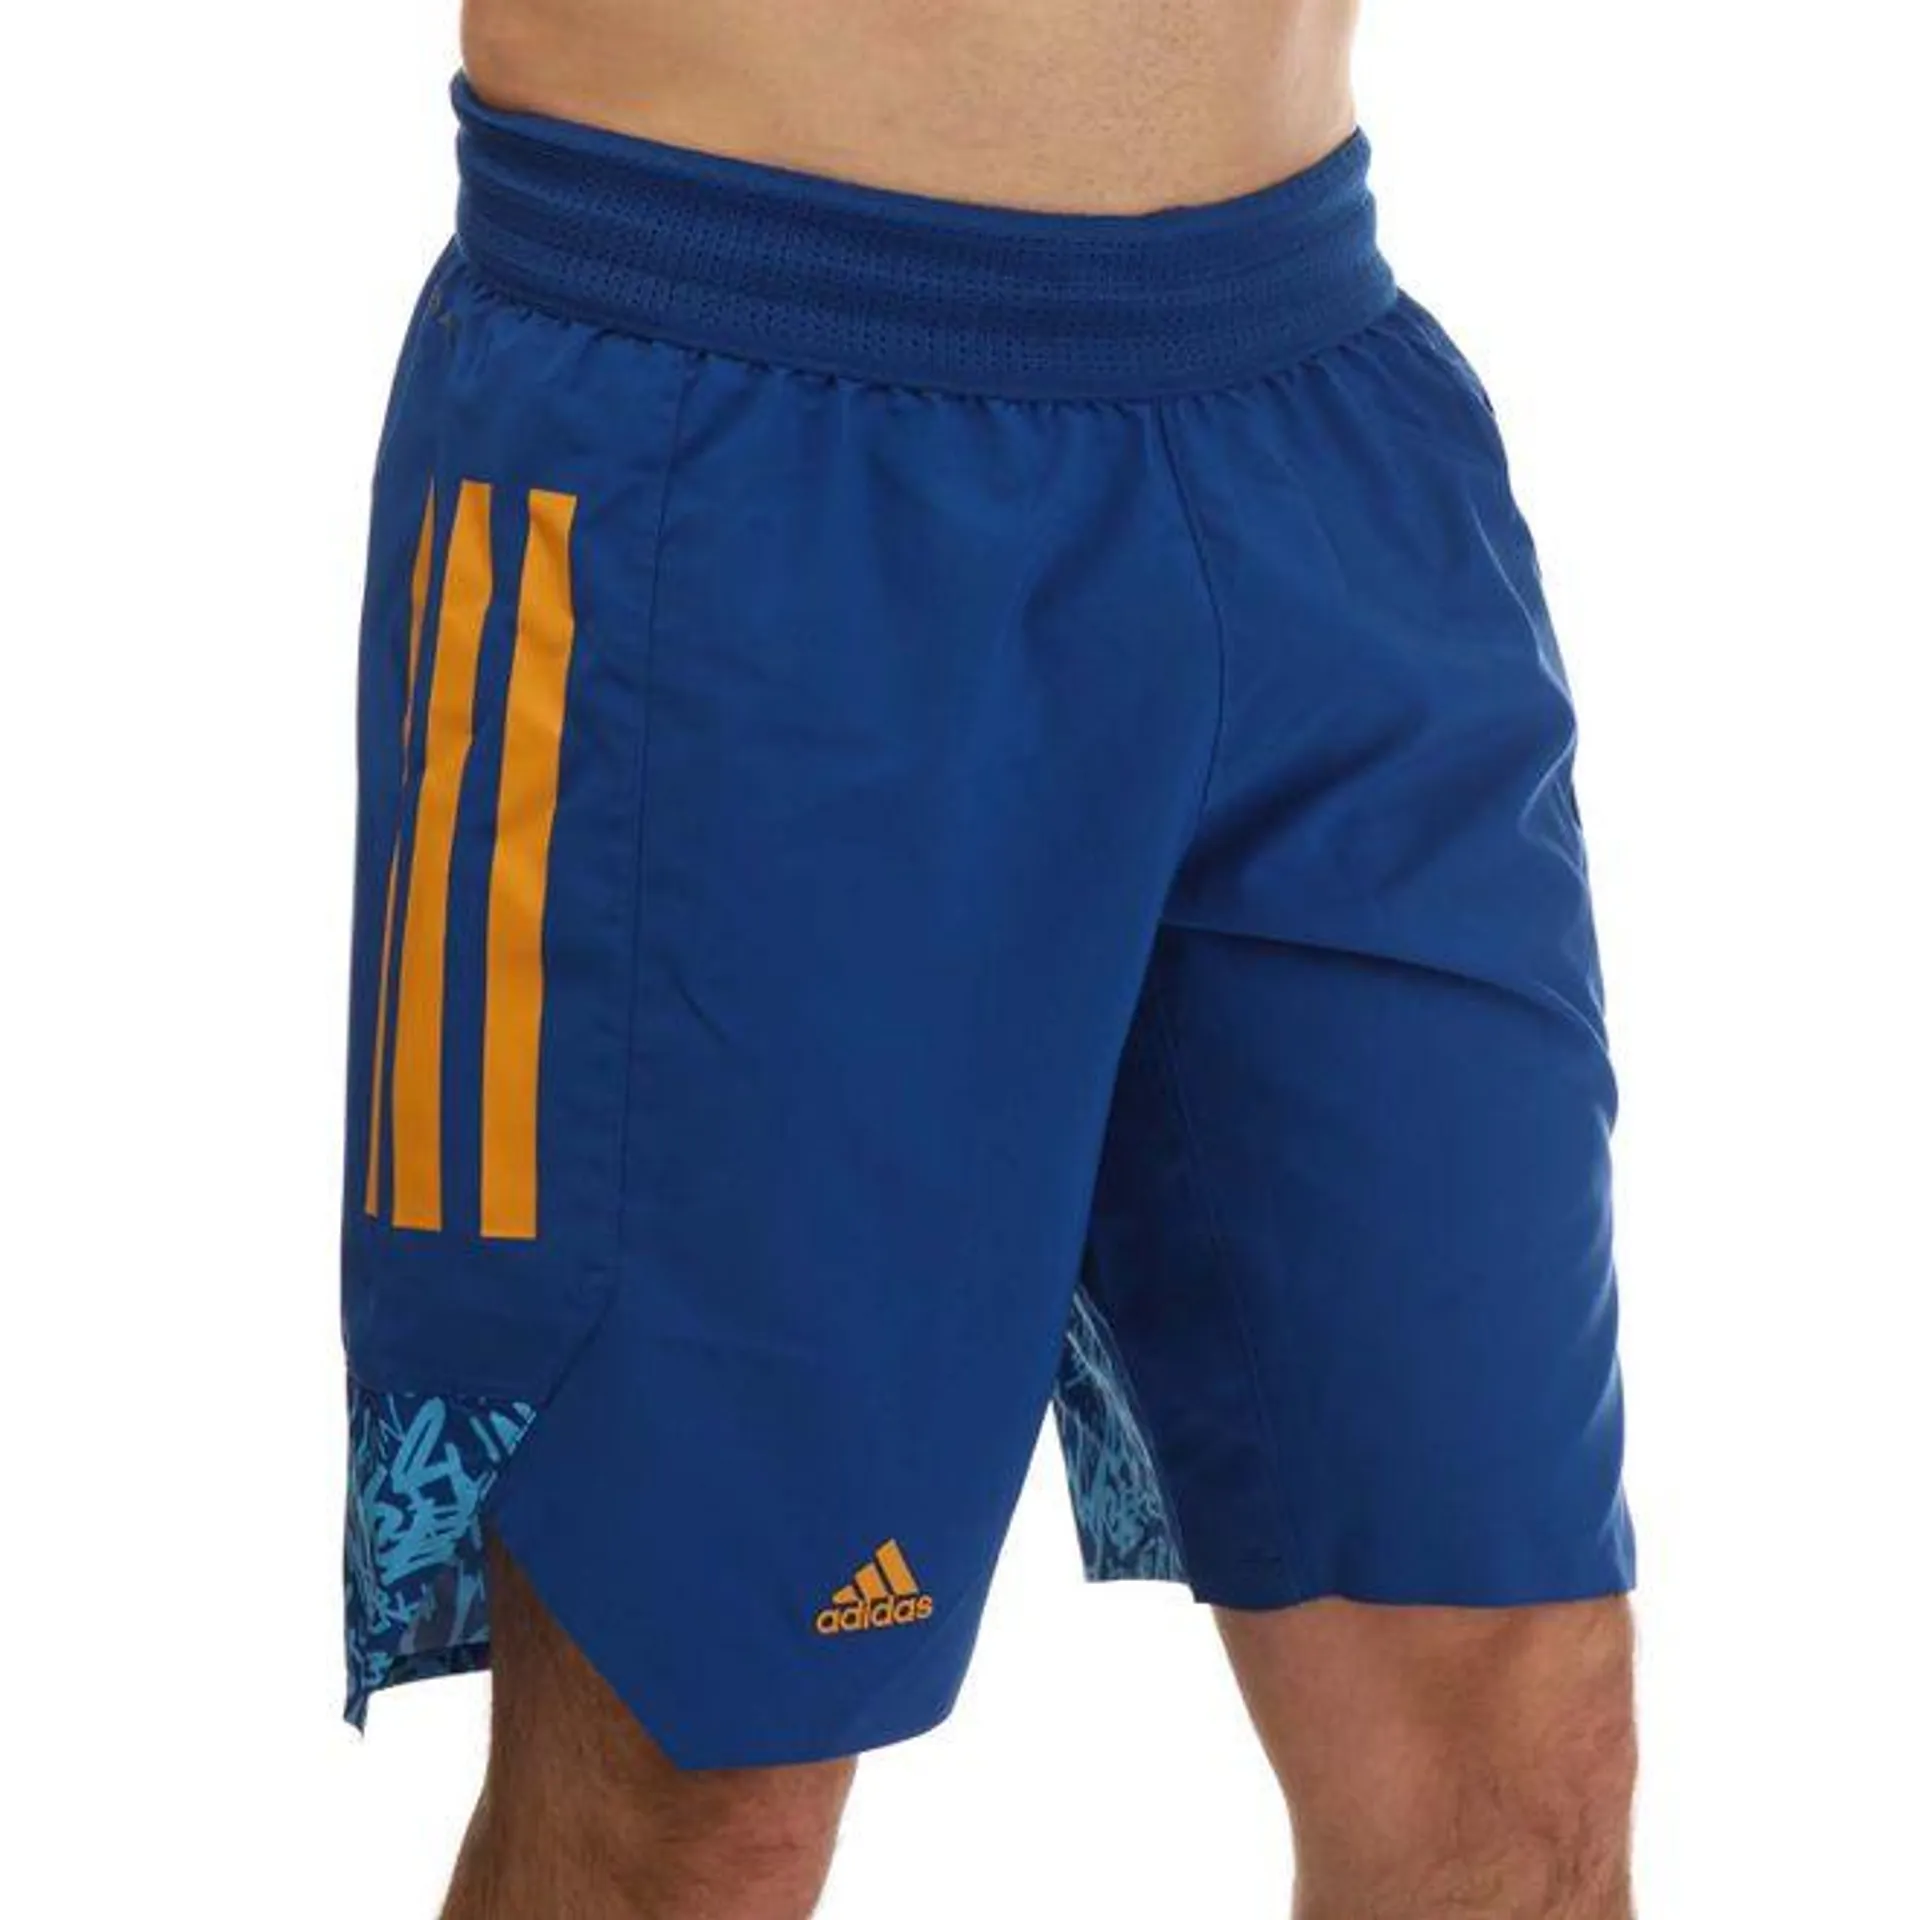 adidas Mens Basketball Shorts in Royal Blue